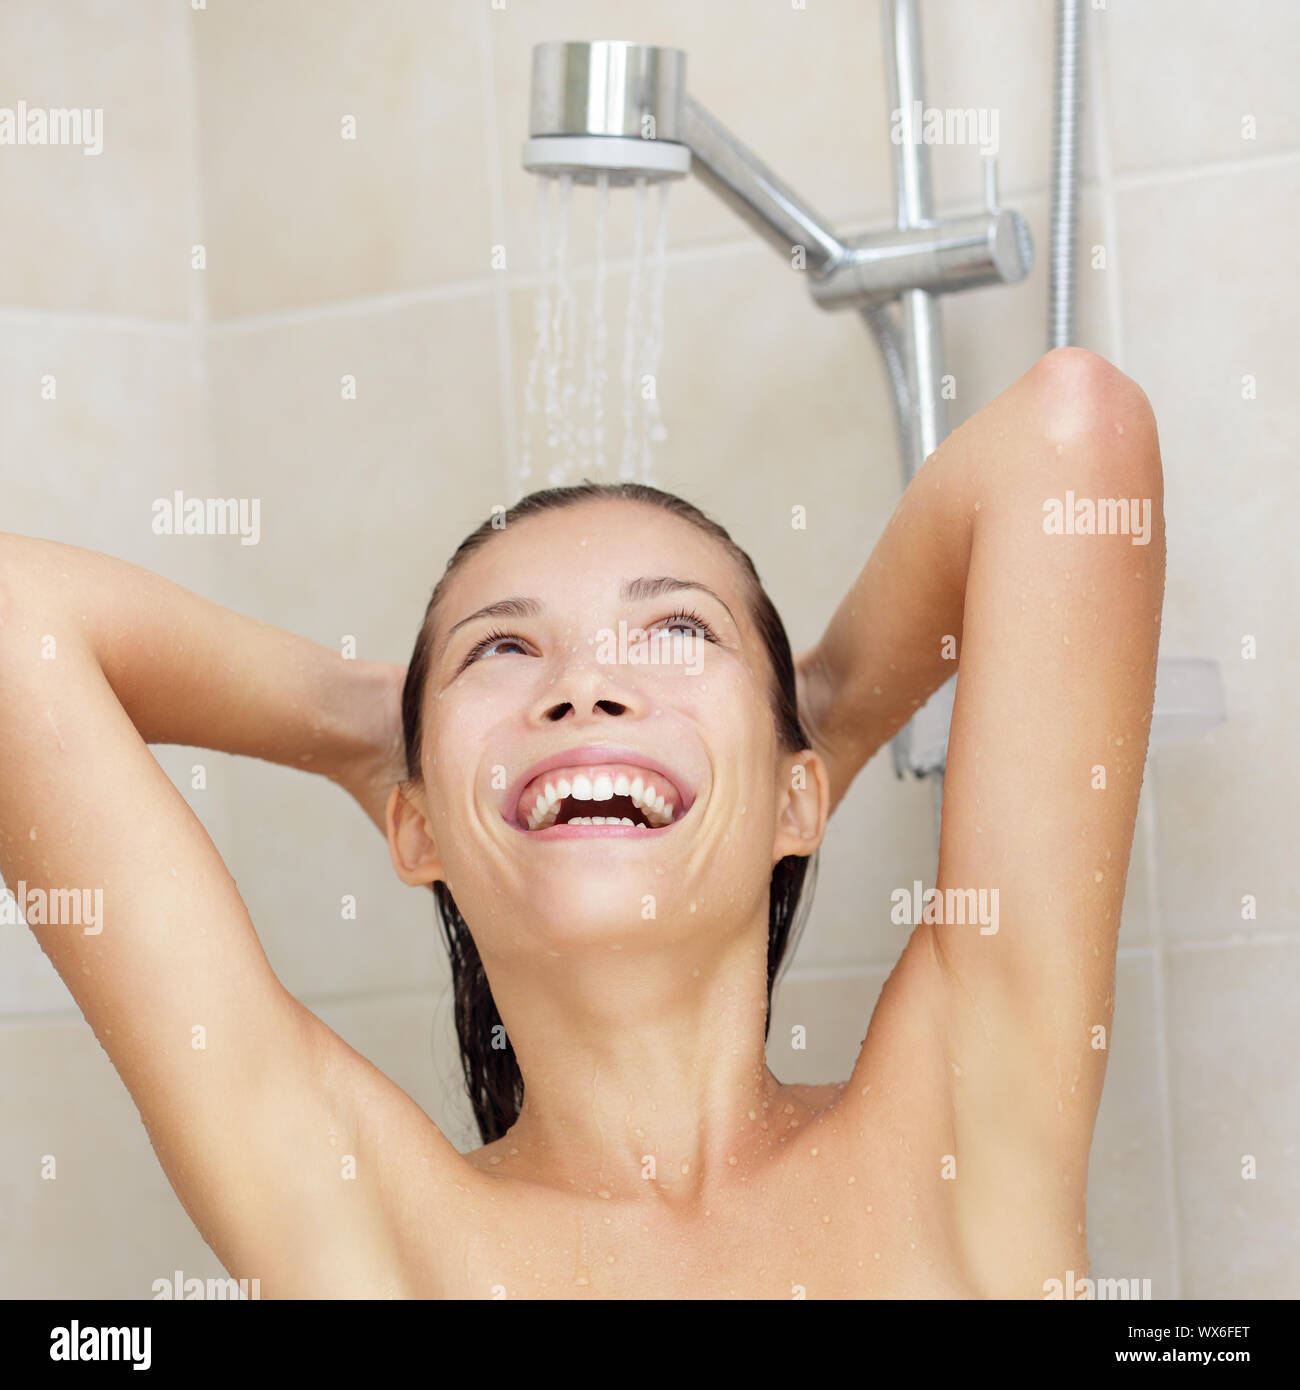 Chicas guapas duchandose fotografías e imágenes de alta resolución - Alamy